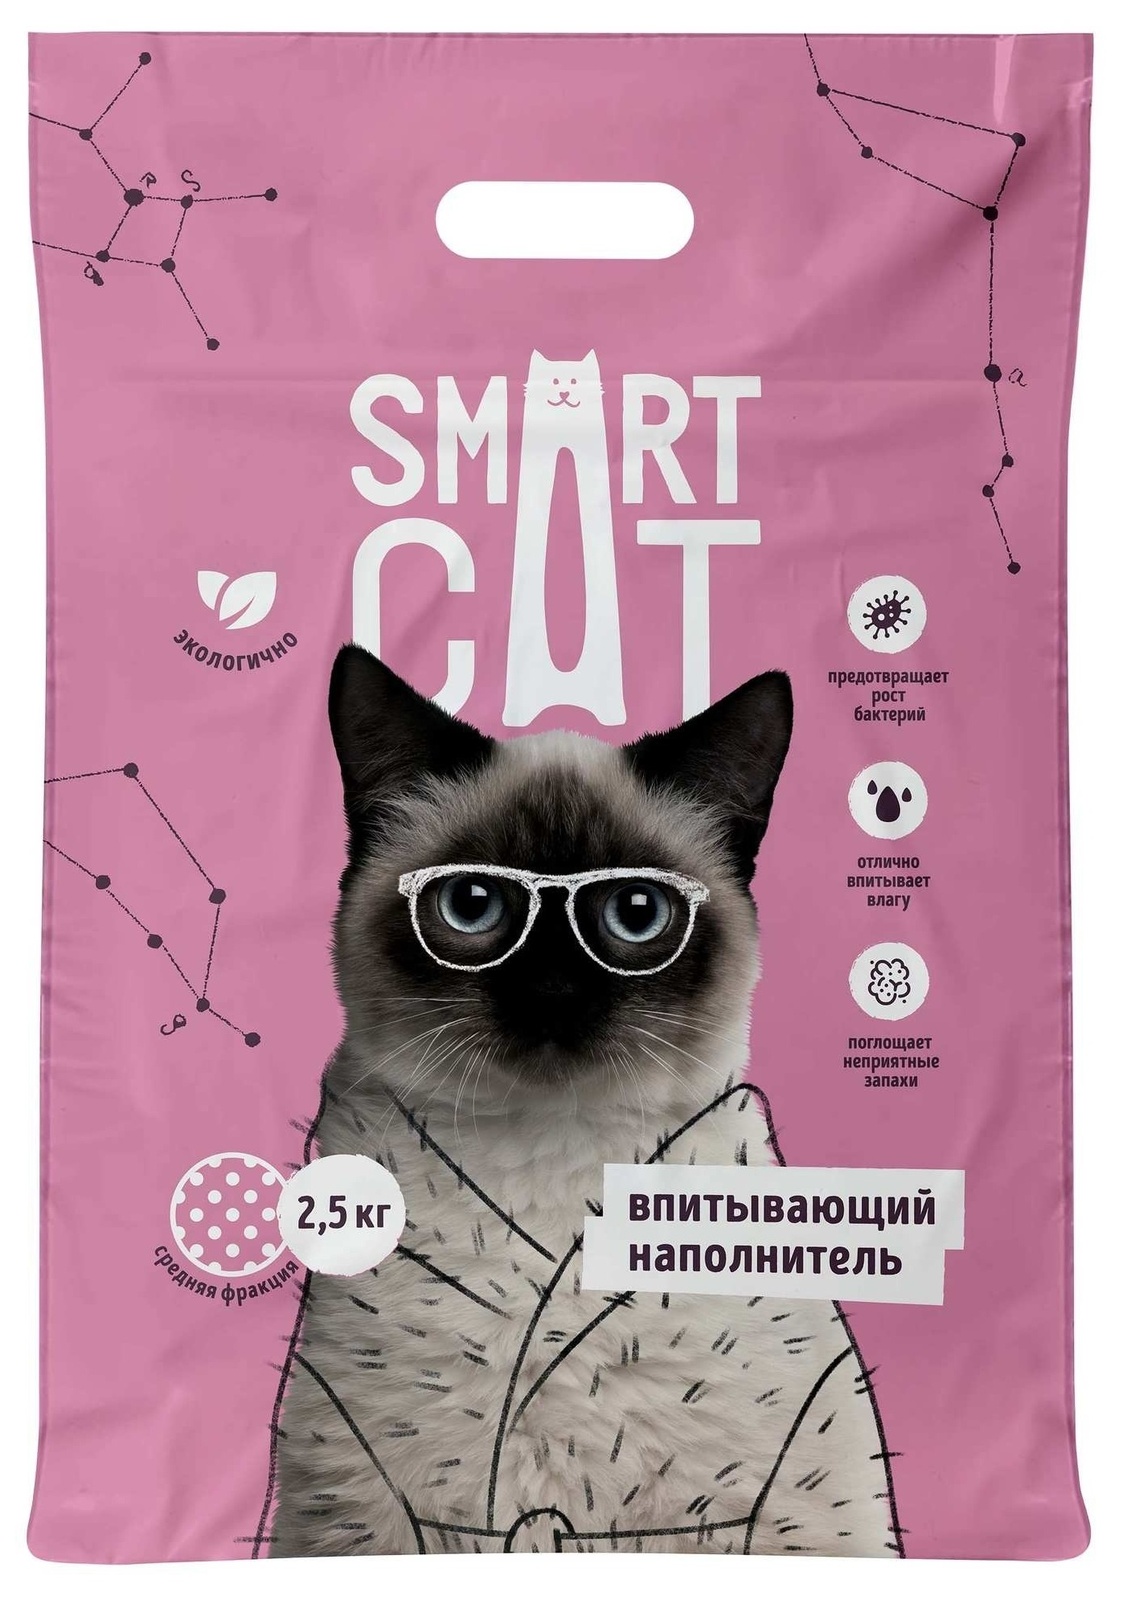 Smart Cat наполнитель Smart Cat наполнитель впитывающий наполнитель, средняя фракция (5 кг) smart cat наполнитель smart cat наполнитель впитывающий наполнитель средняя фракция 5 кг